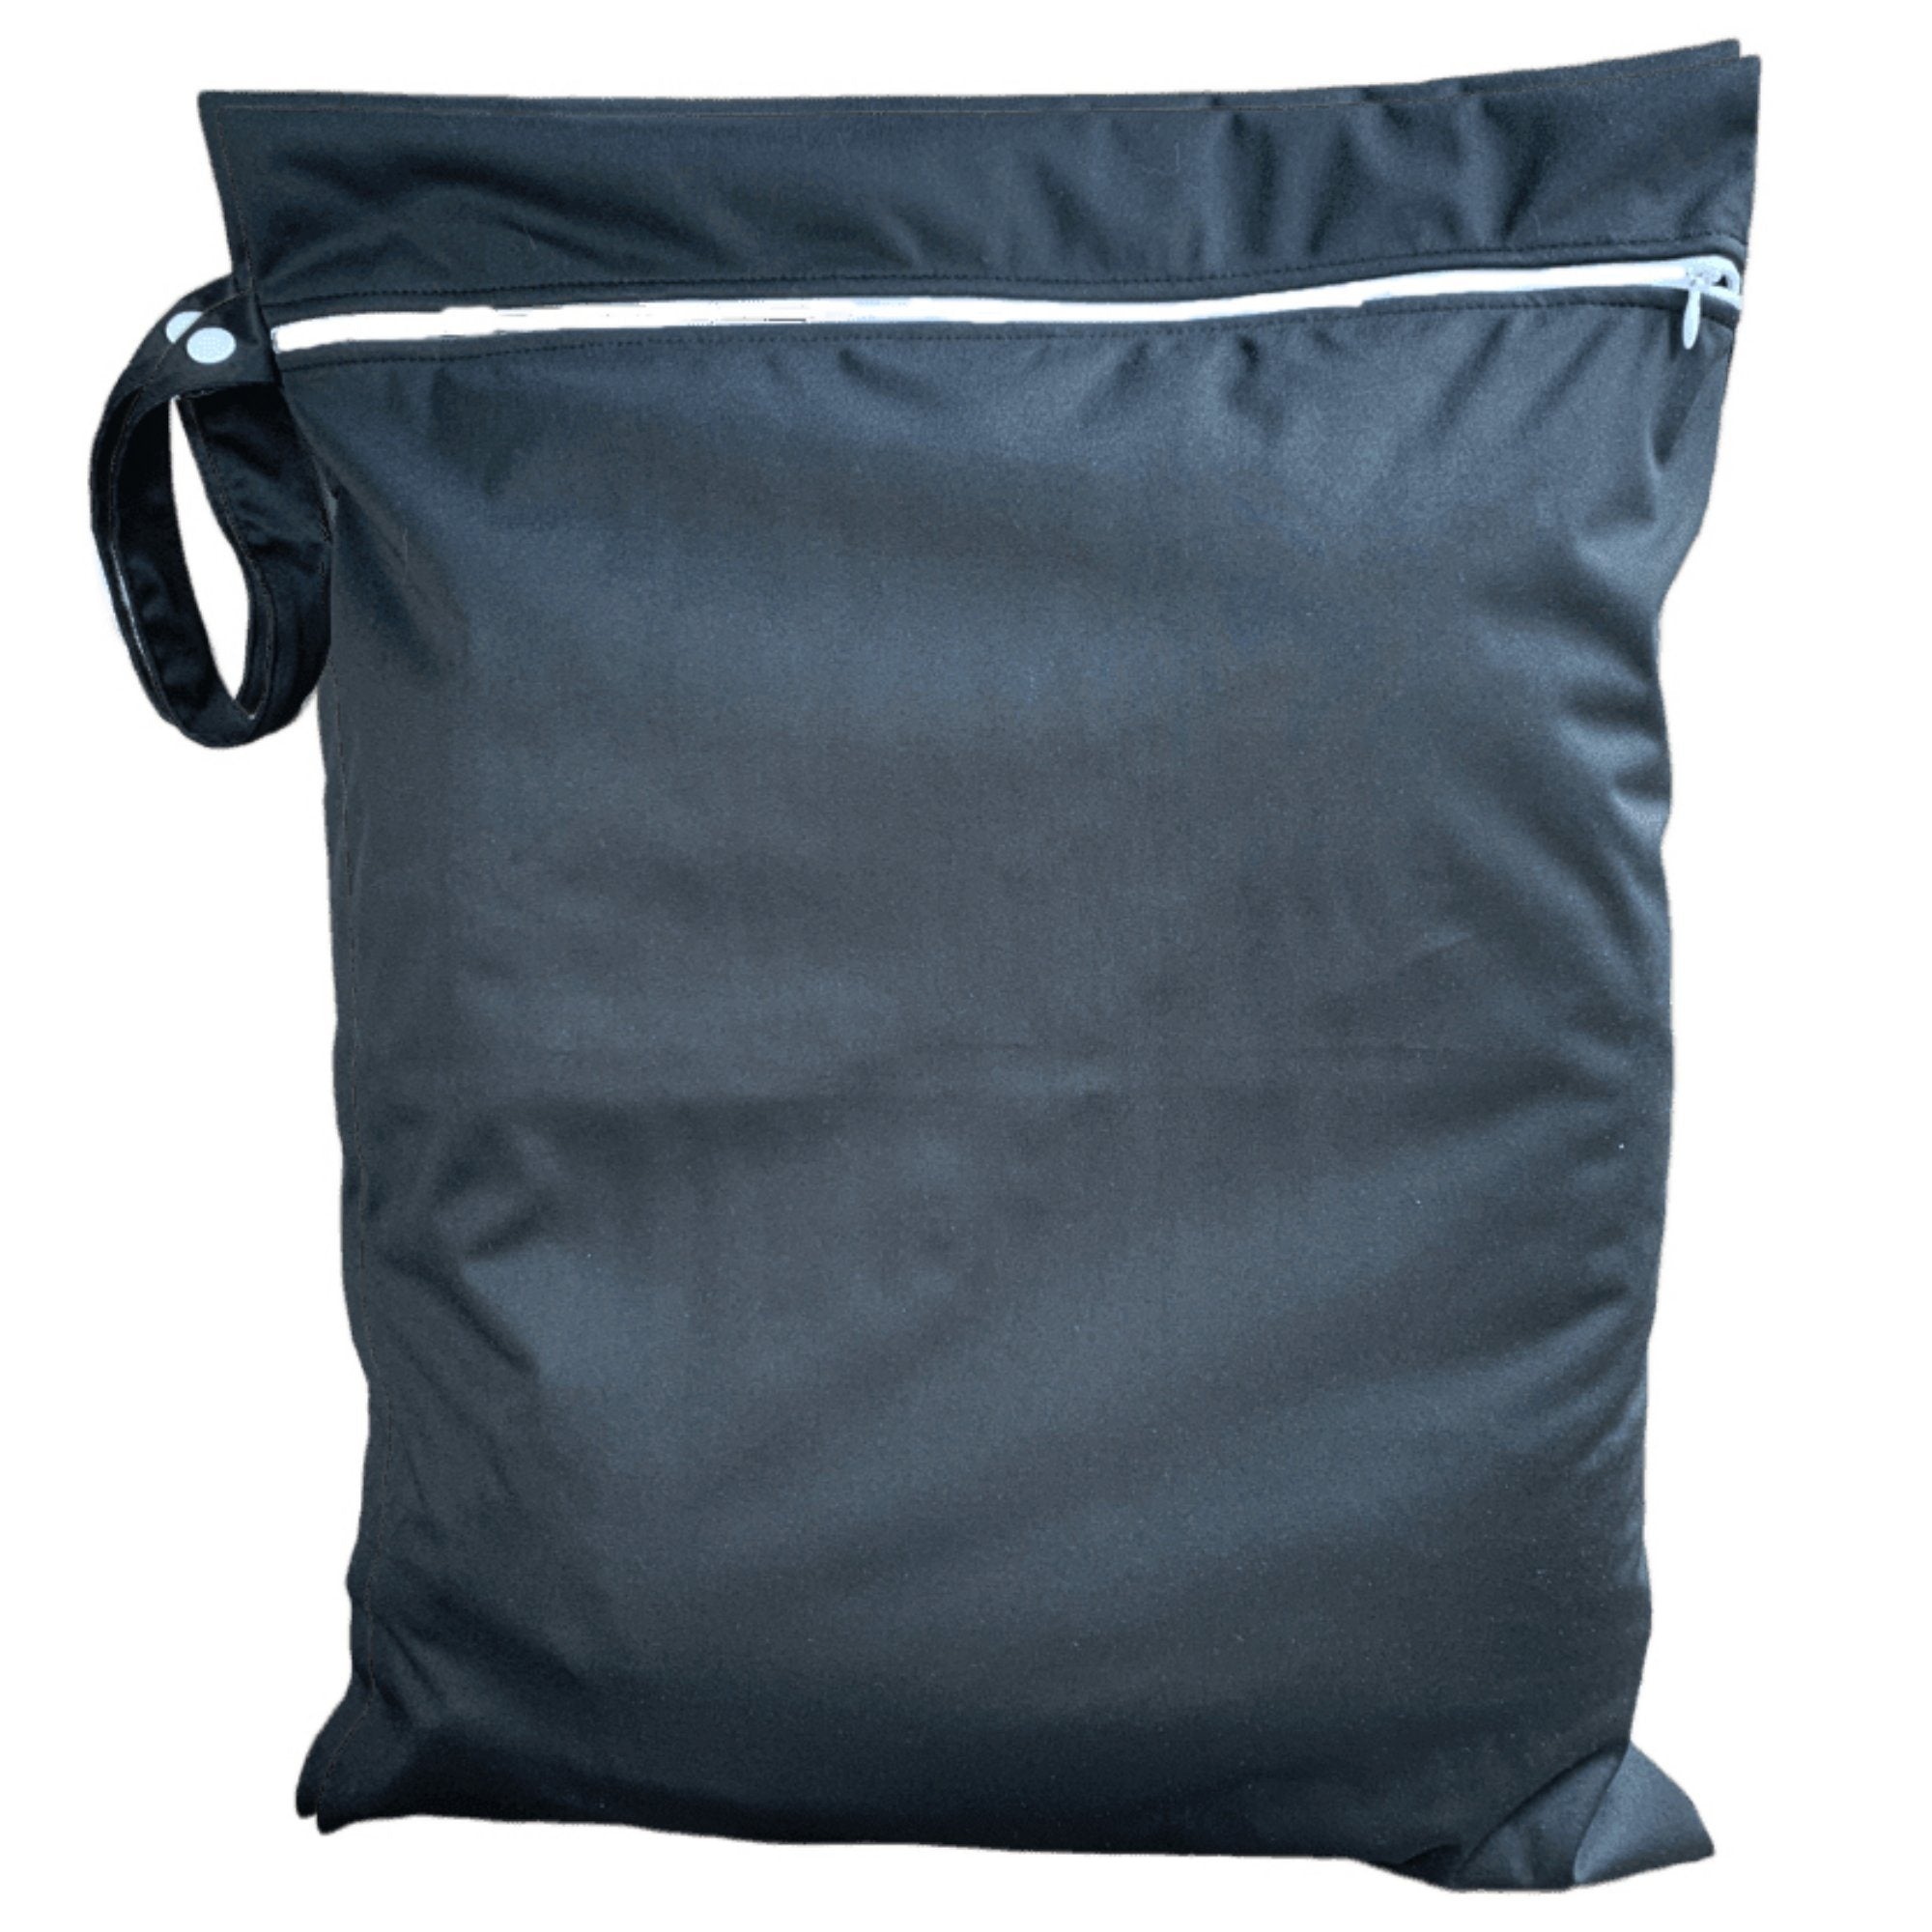 Large 40x50 cm Bag - Black Large Wet Bag Lil Savvy 